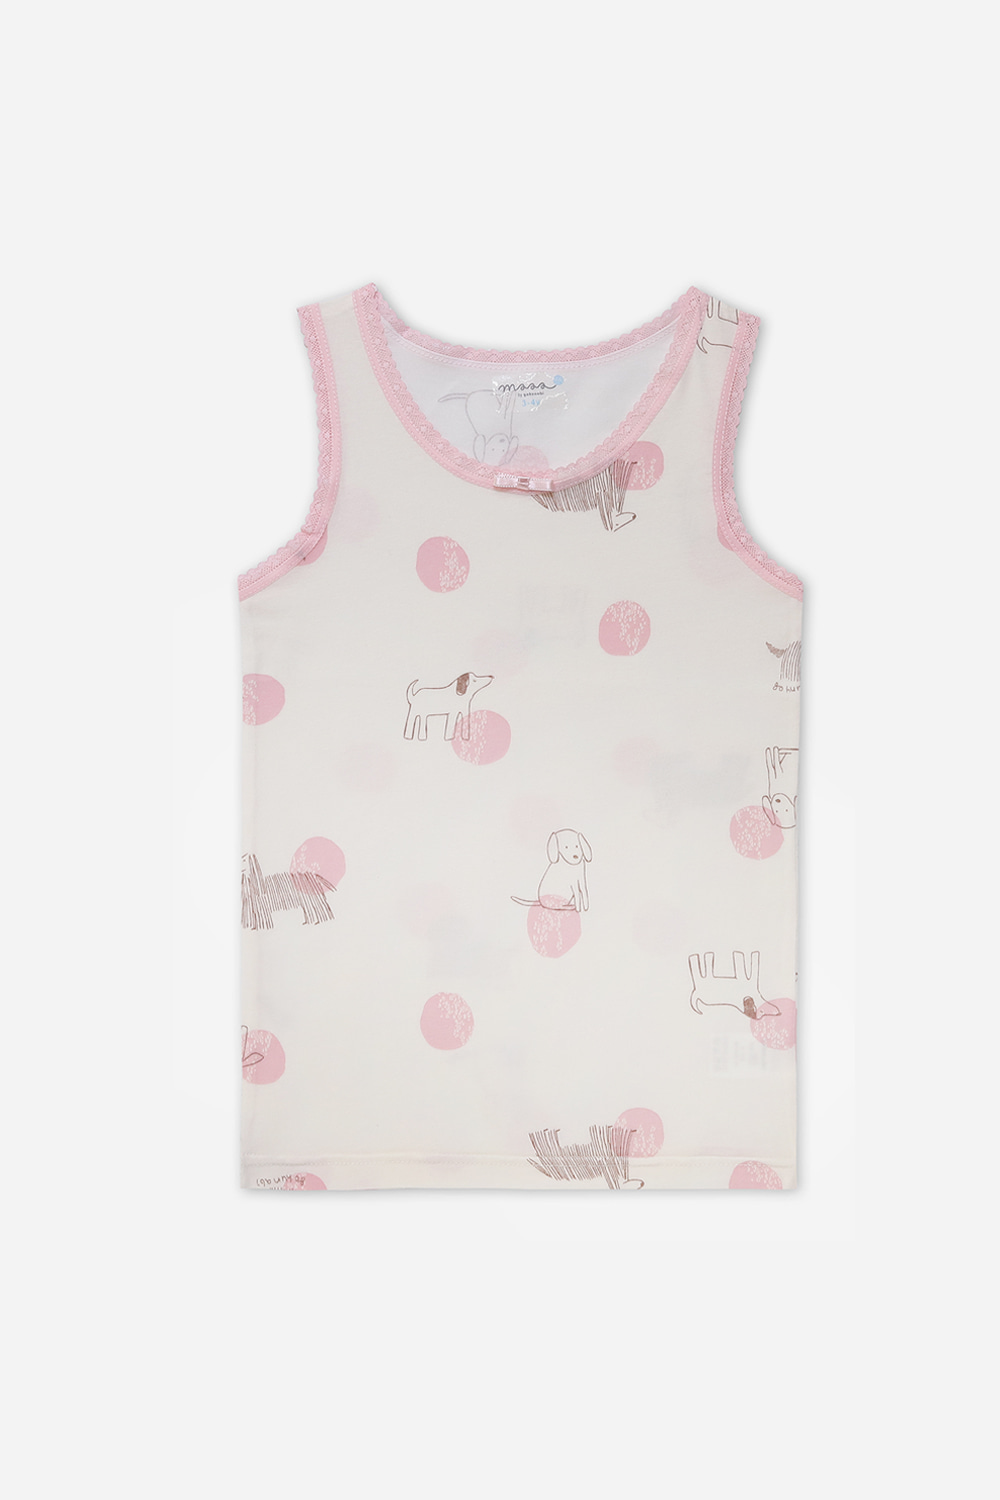 핑크펫 런닝잠옷, 홈웨어, 아동내복, 아동속옷,성인잠옷,고후나비